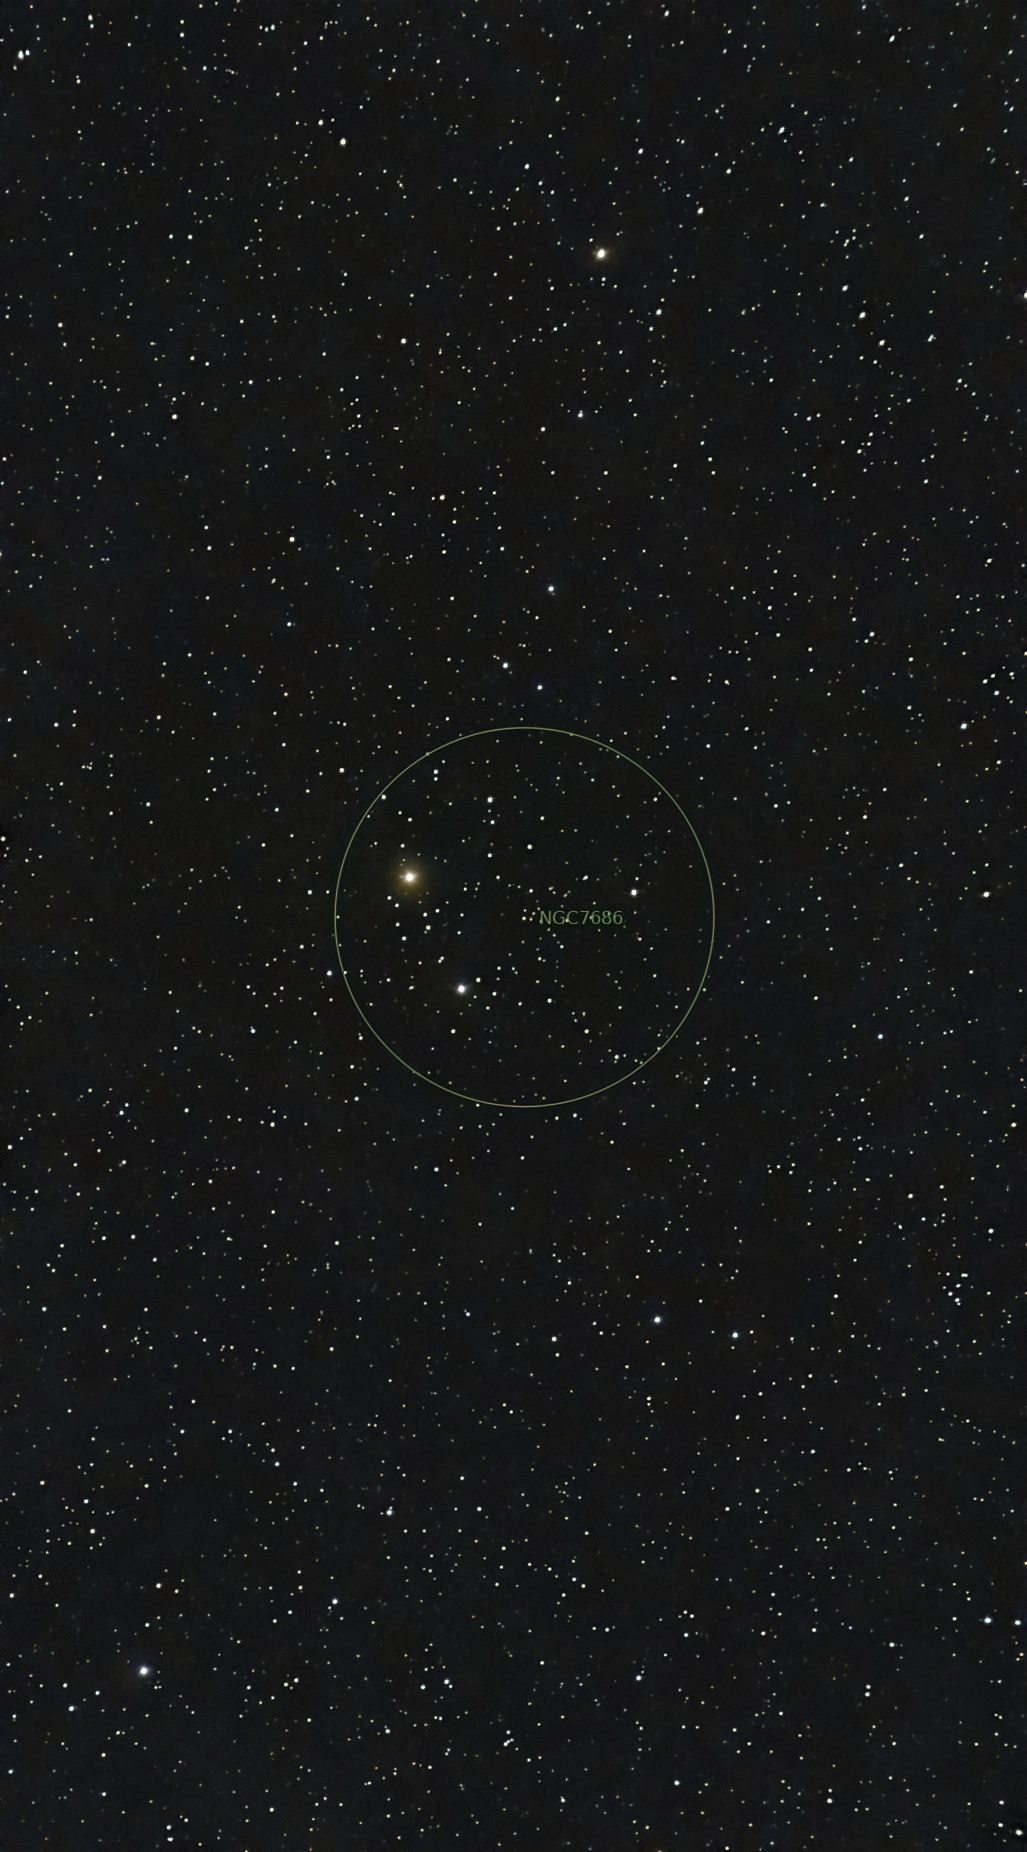 NGC7686 "Offener Sternhaufen oder Asterismus?"